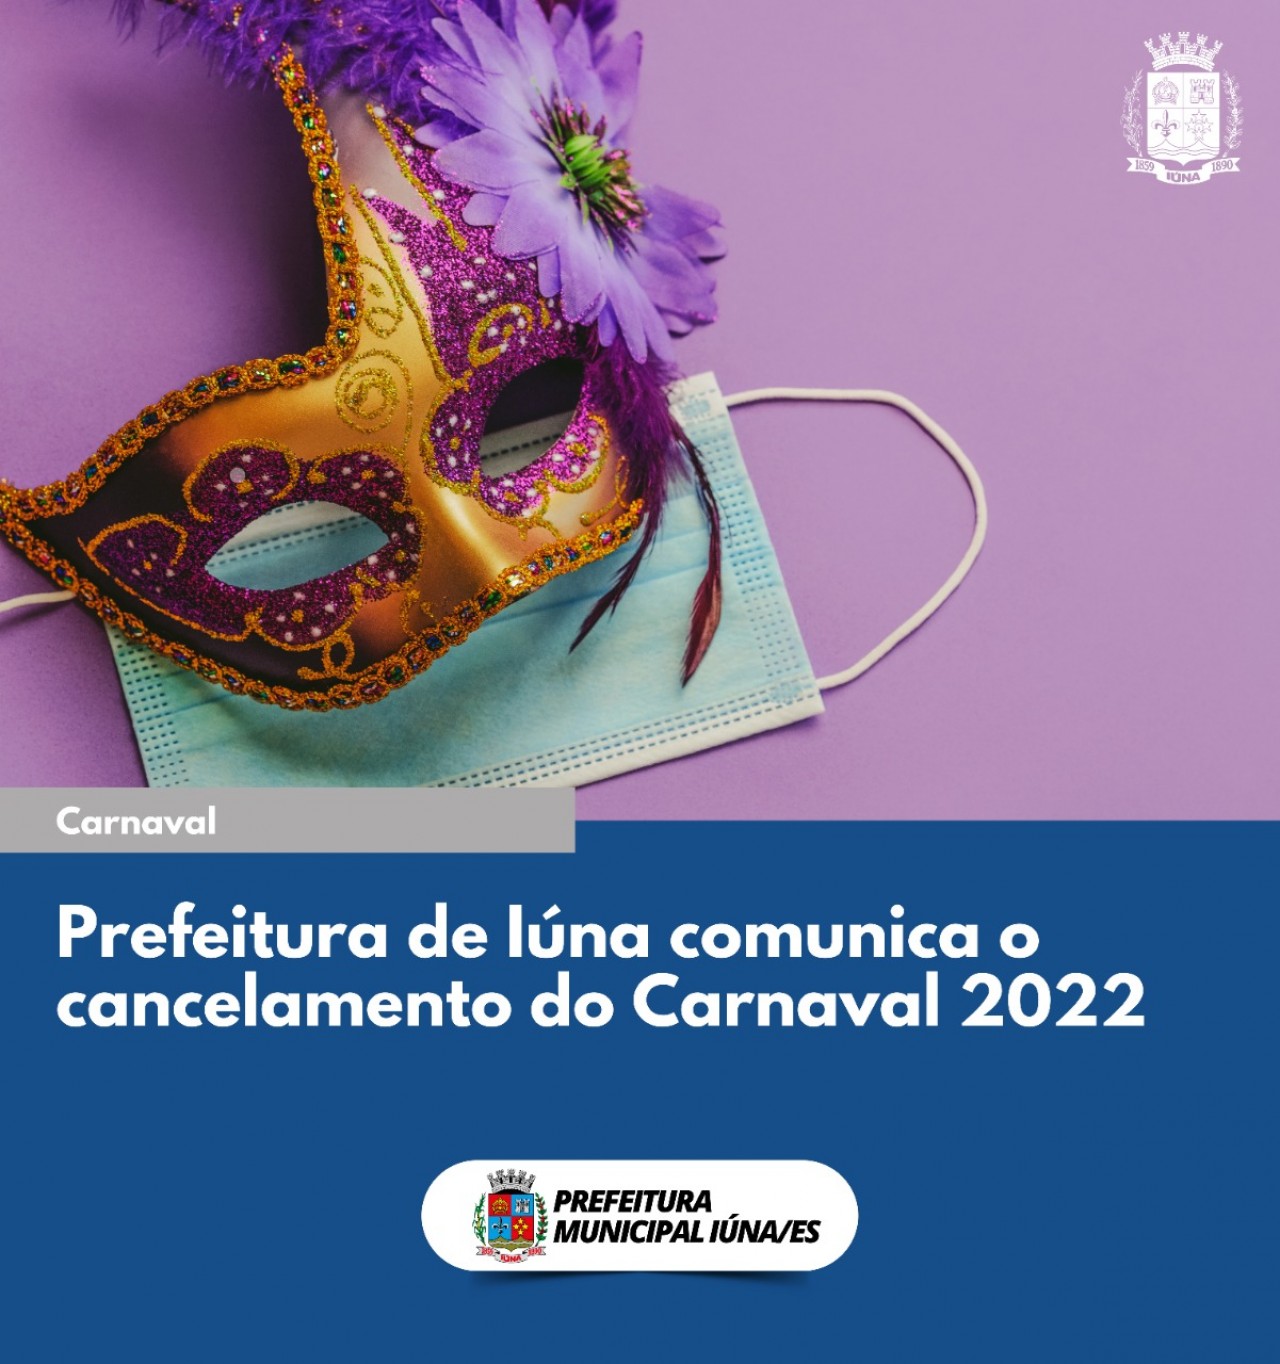 Prefeitura de Iúna comunica o cancelamento do carnaval 2022.